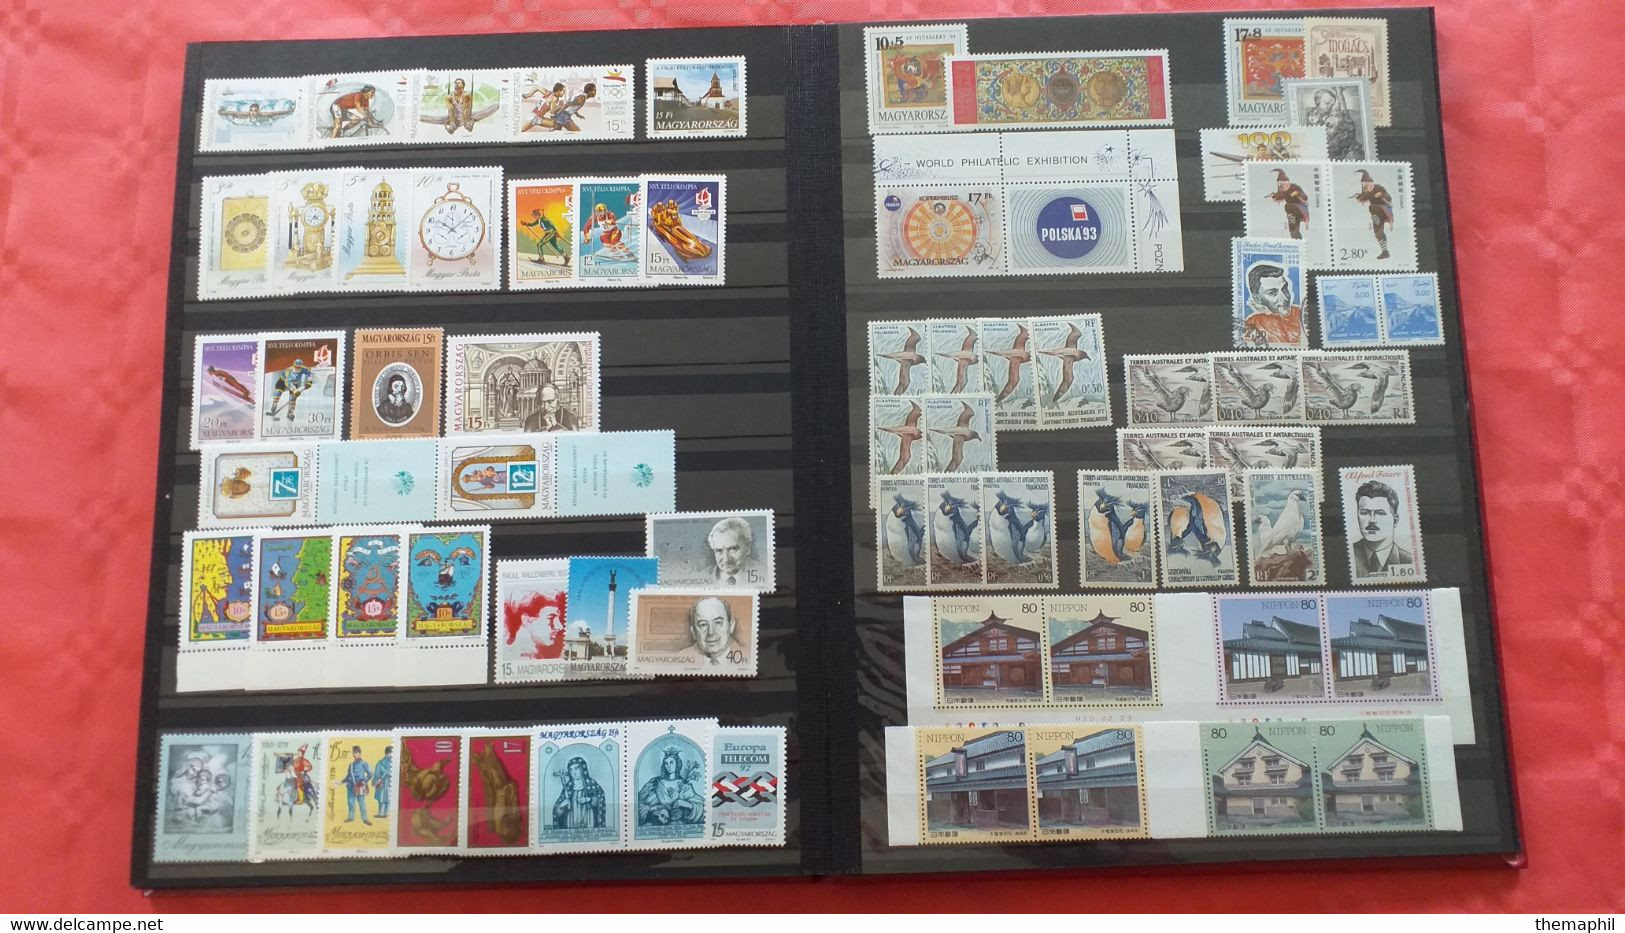 lot n° TH 491 EUROPE et divers pays timbres neufs xx un lot de 2 classeurs